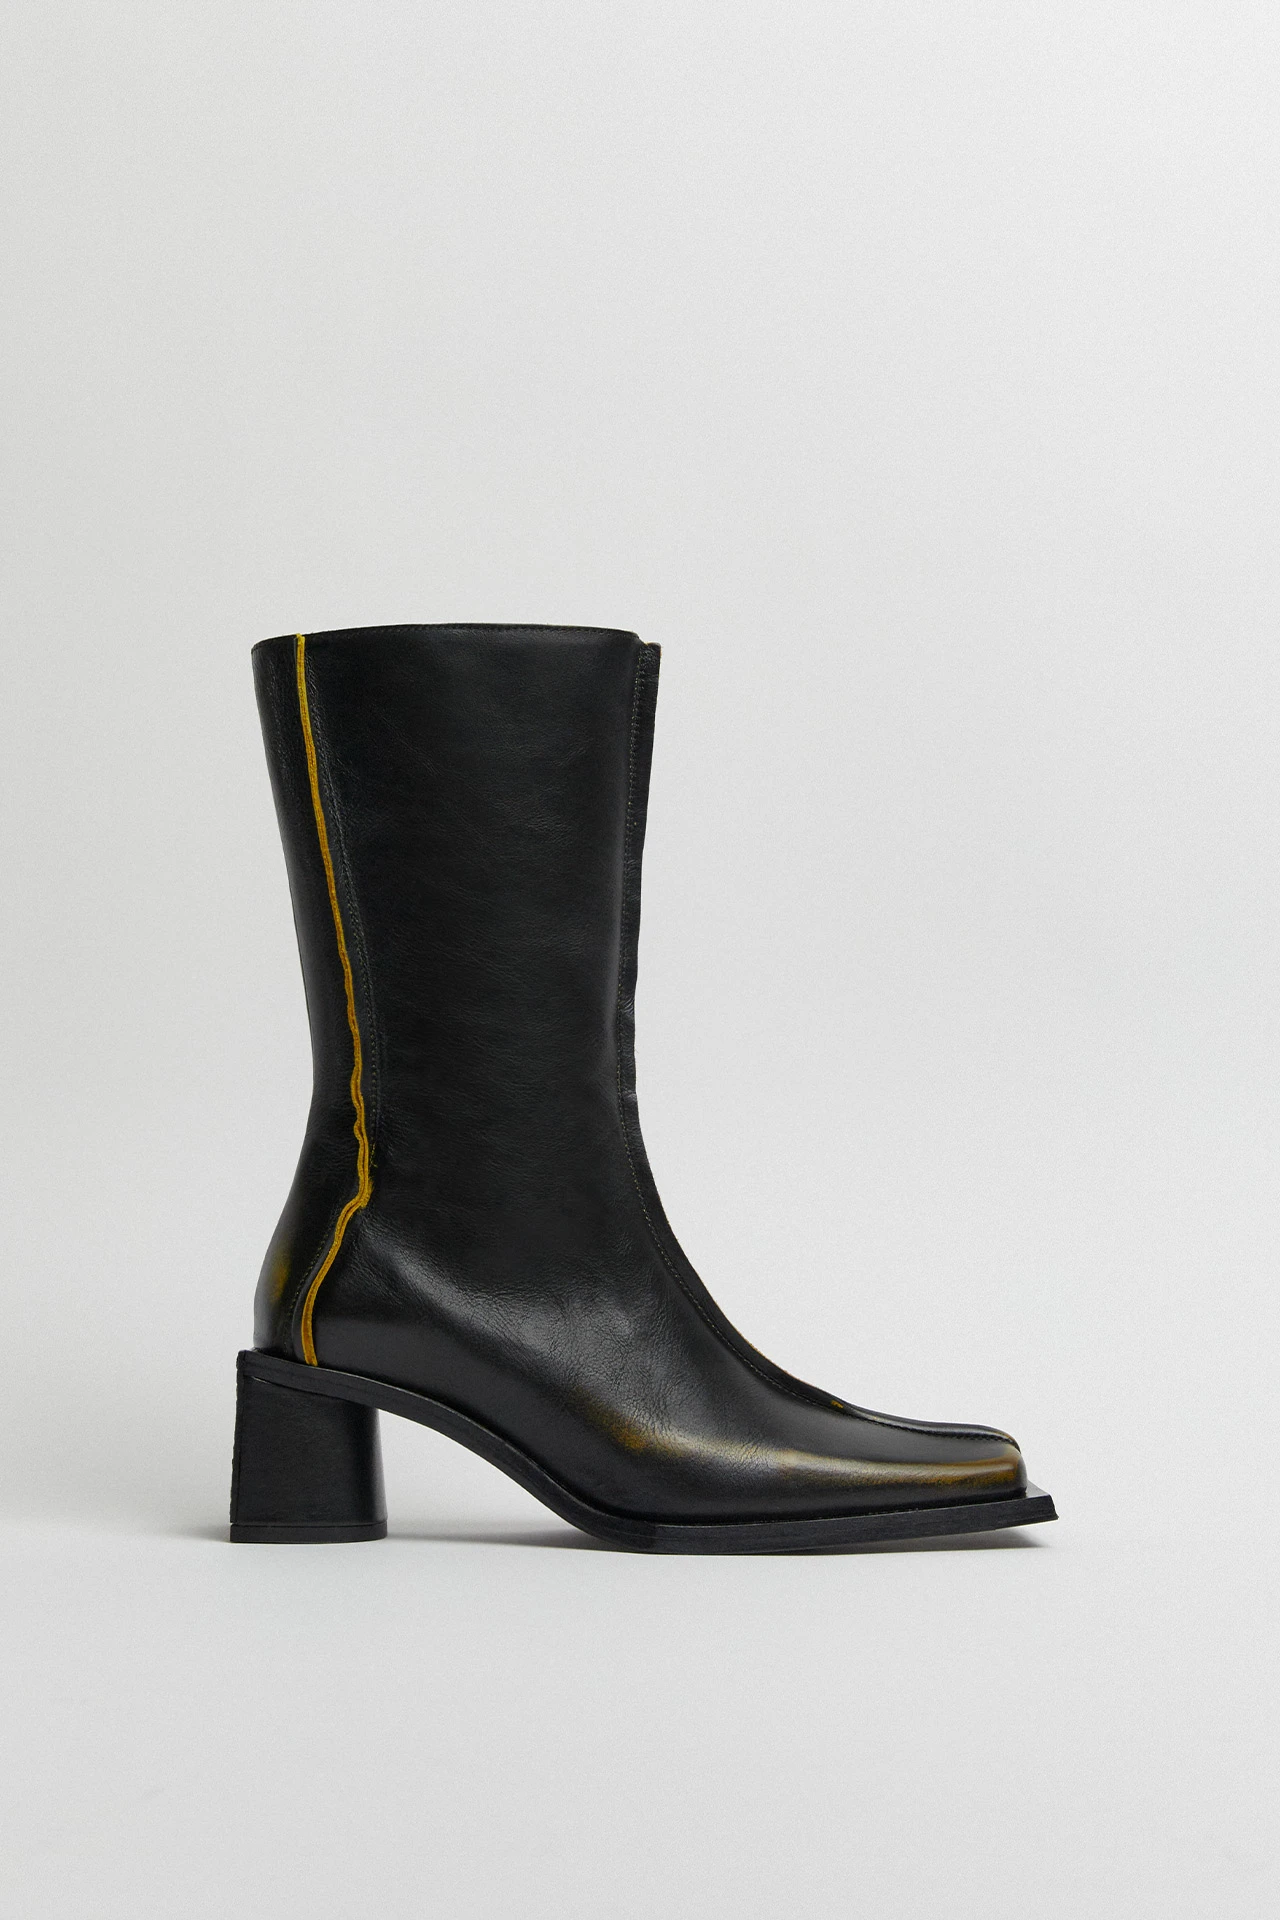 Miista-reiko-black-mustard-boots-01